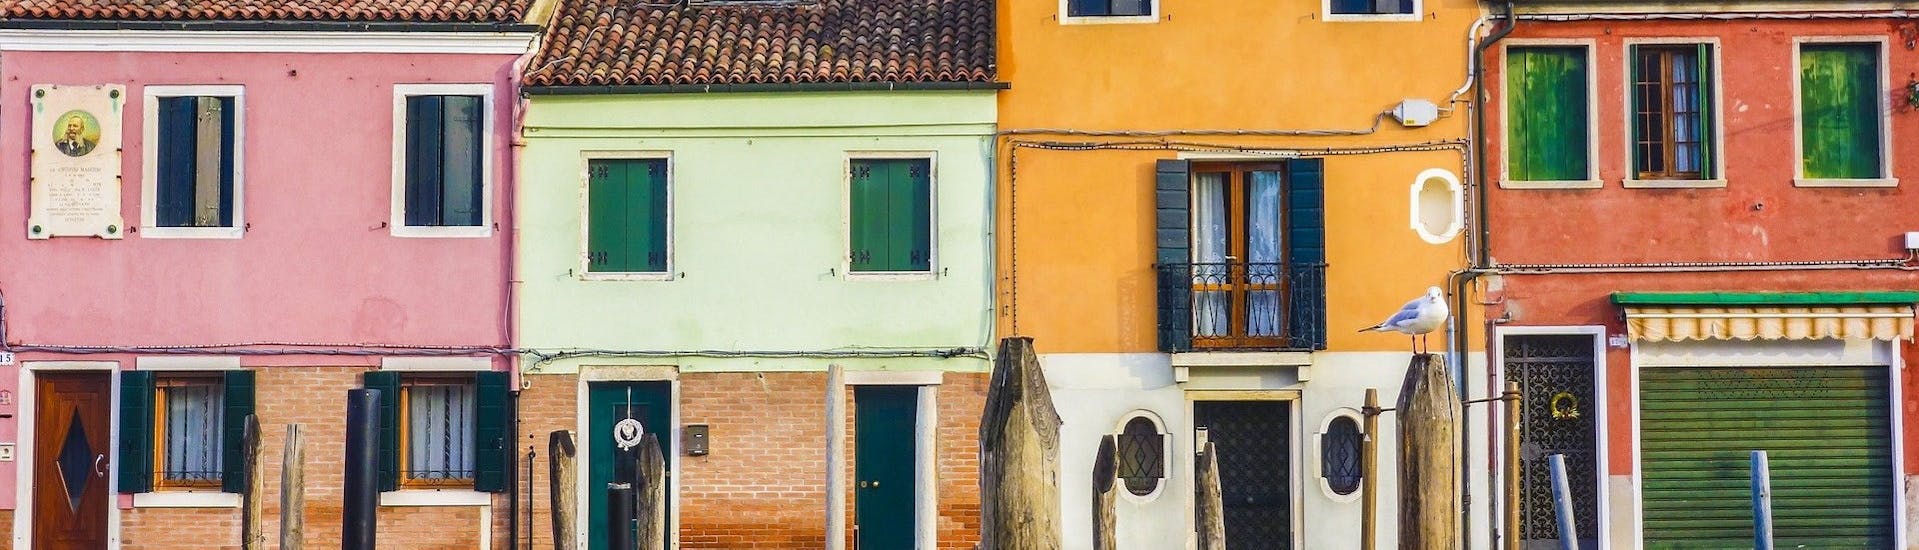 Boottocht van Venetië naar Murano met toeristische attracties.